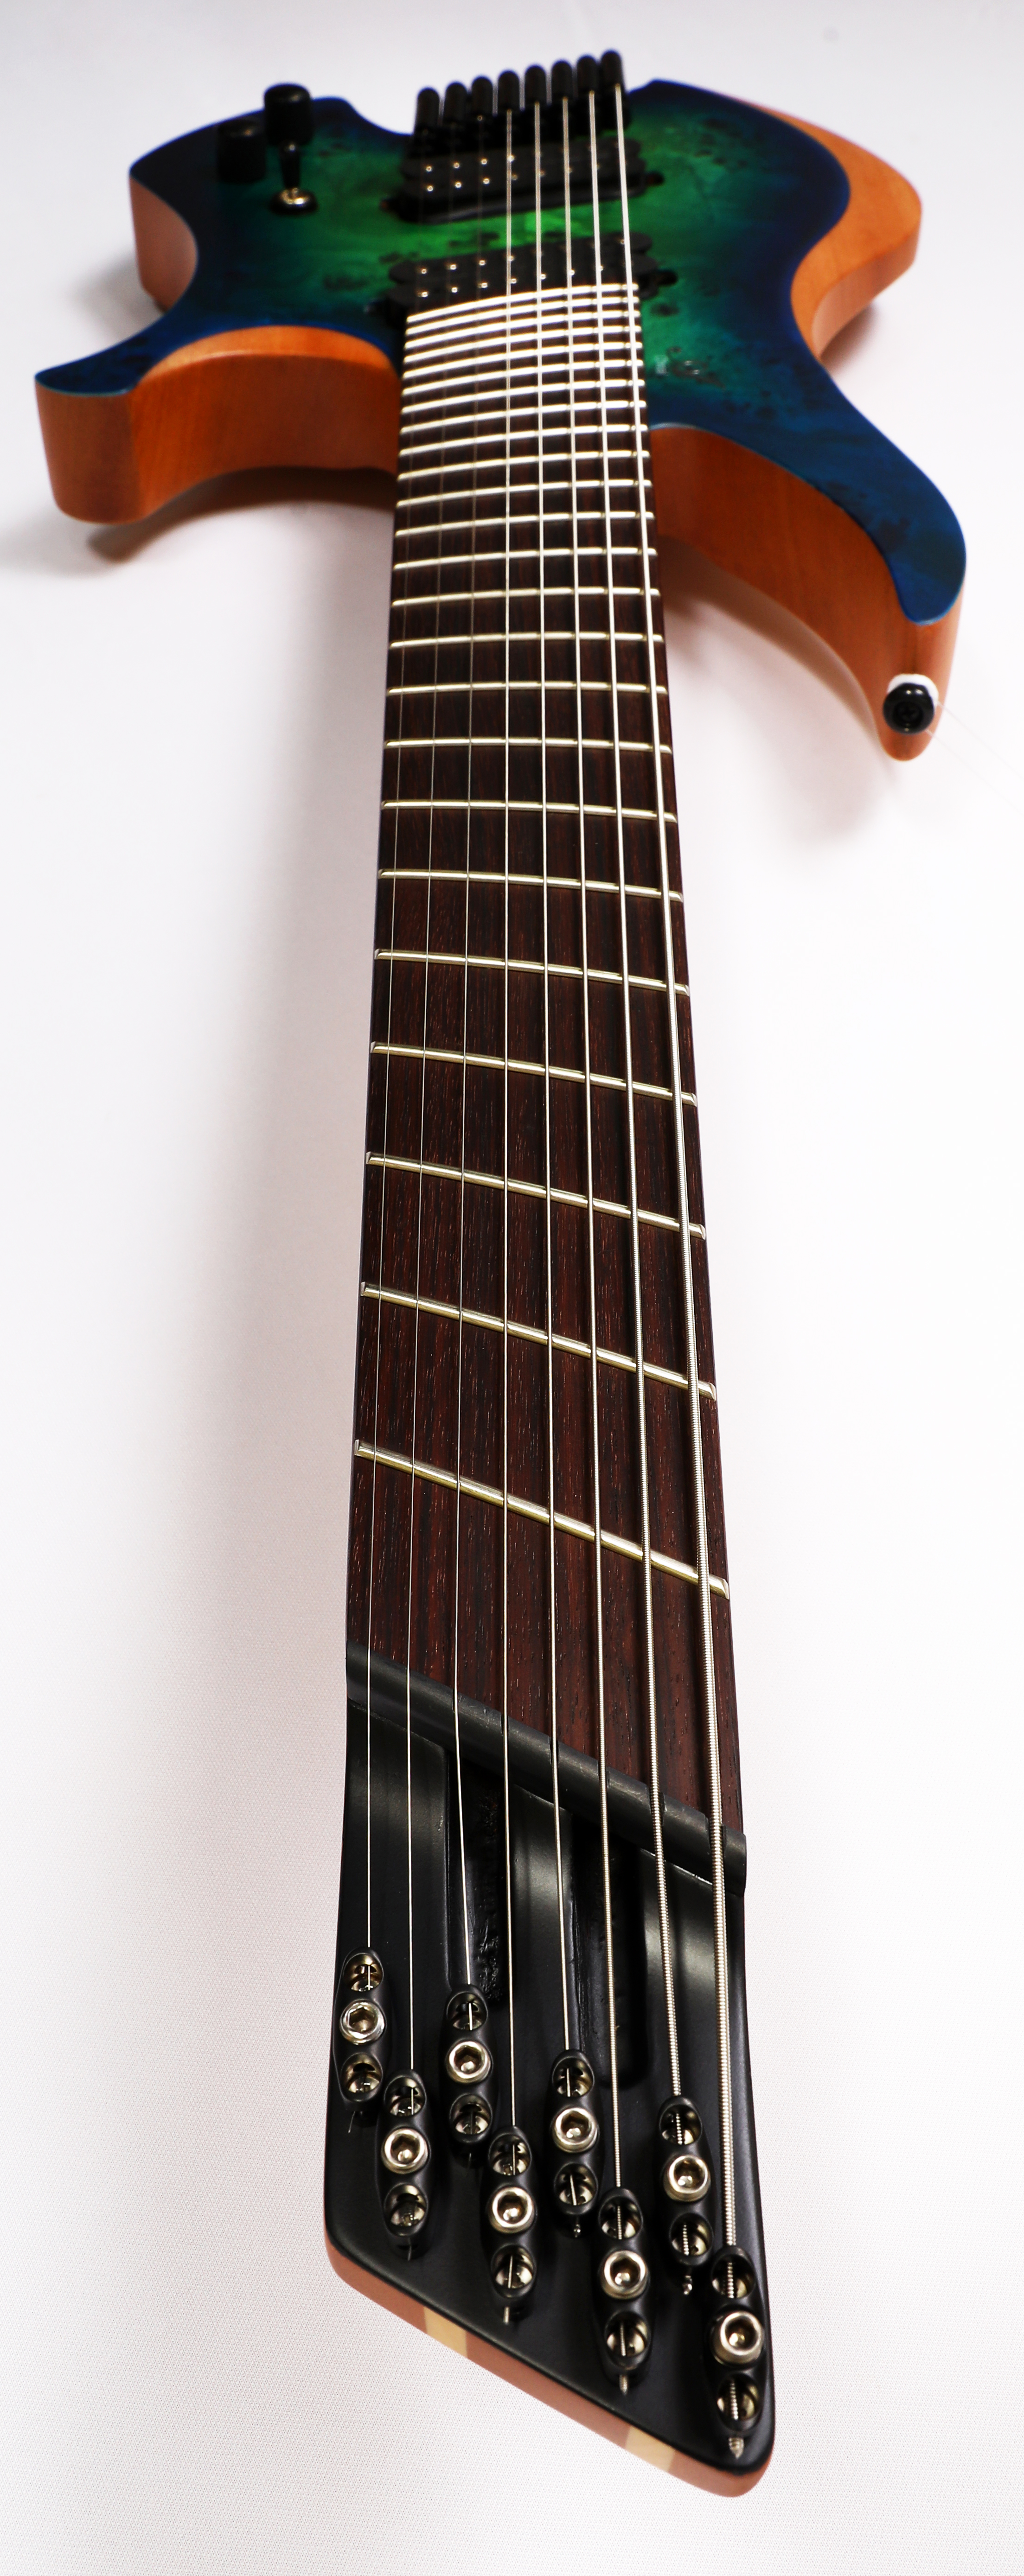 Agile Chiral Parallax 82528 RN Satin Green / Blue Headless Guitar